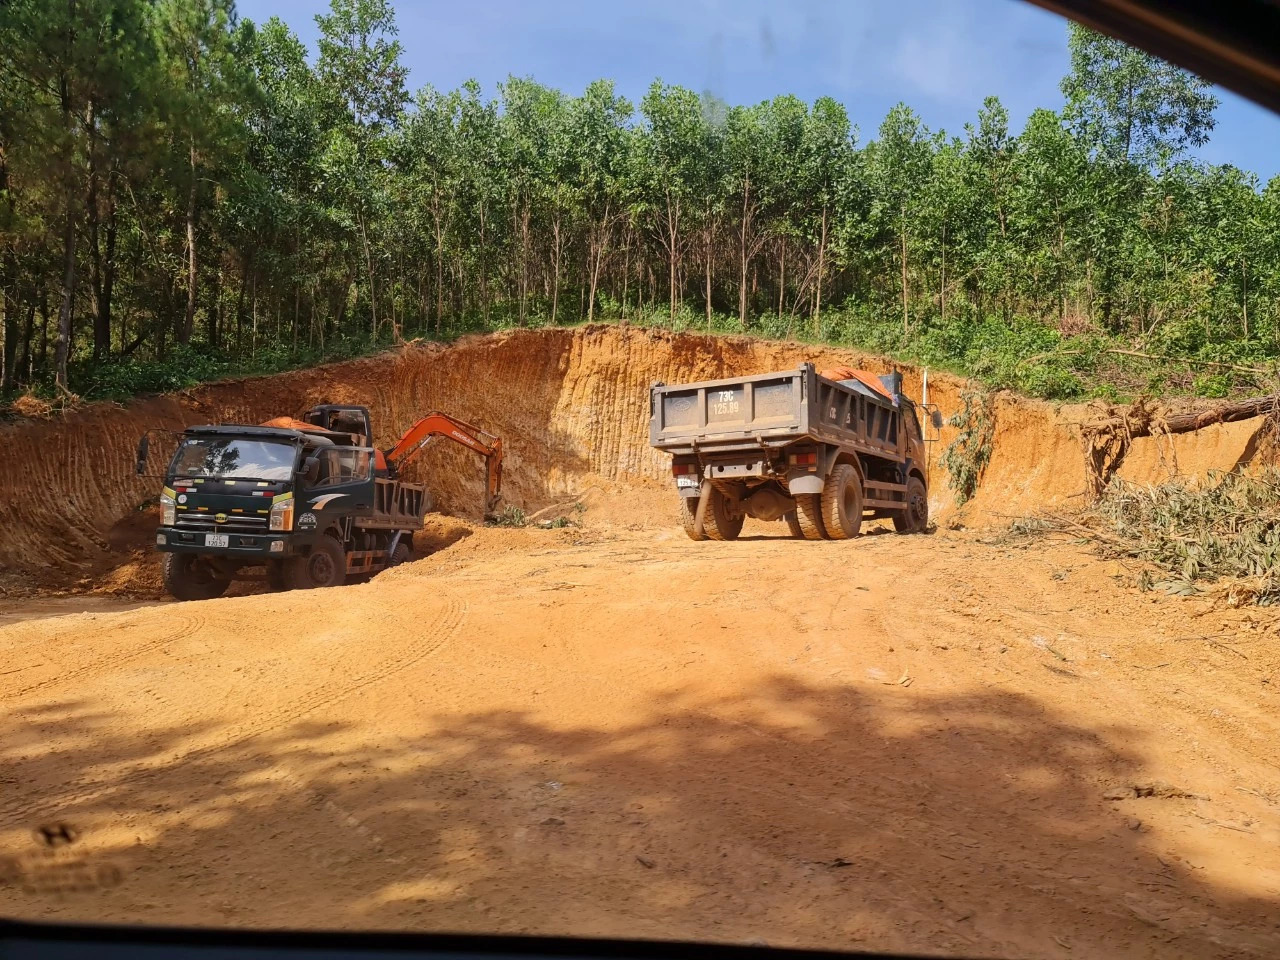 Mỏ đất ở thôn Lạc Thiện, xã Minh Hóa, huyện Minh Hóa không có giấy phép khai thác đất nhưng vẫn diễn ra công khai, liên tục